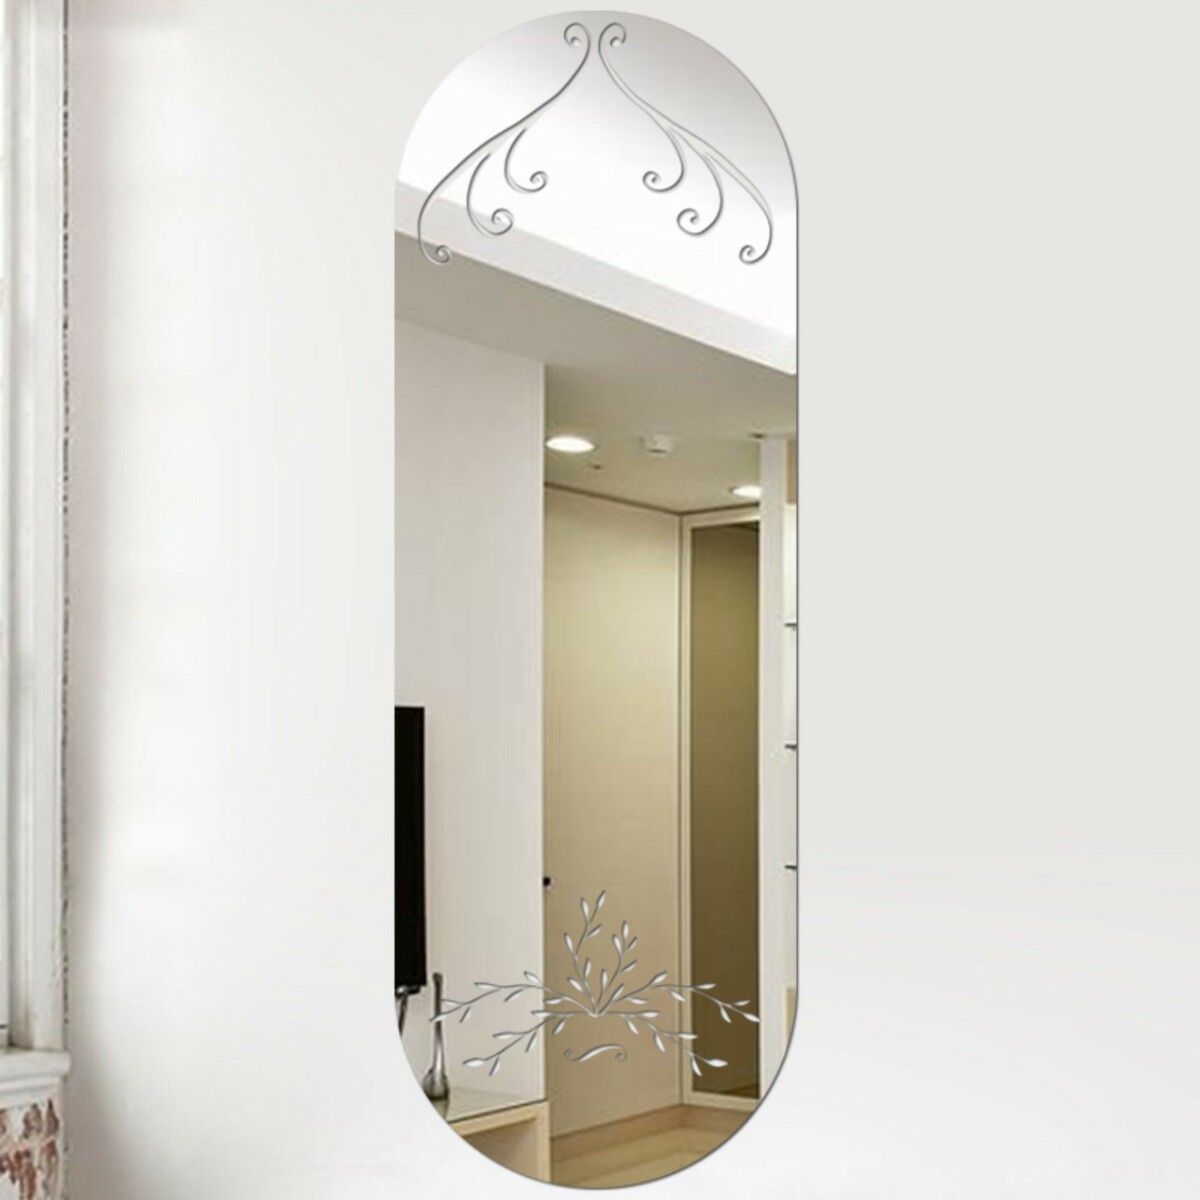 Зеркало настенное, наклейки интерьерные, зеркальные, декор на стену, панно 45 х 15 см чернокнижец зеркальные врата теней